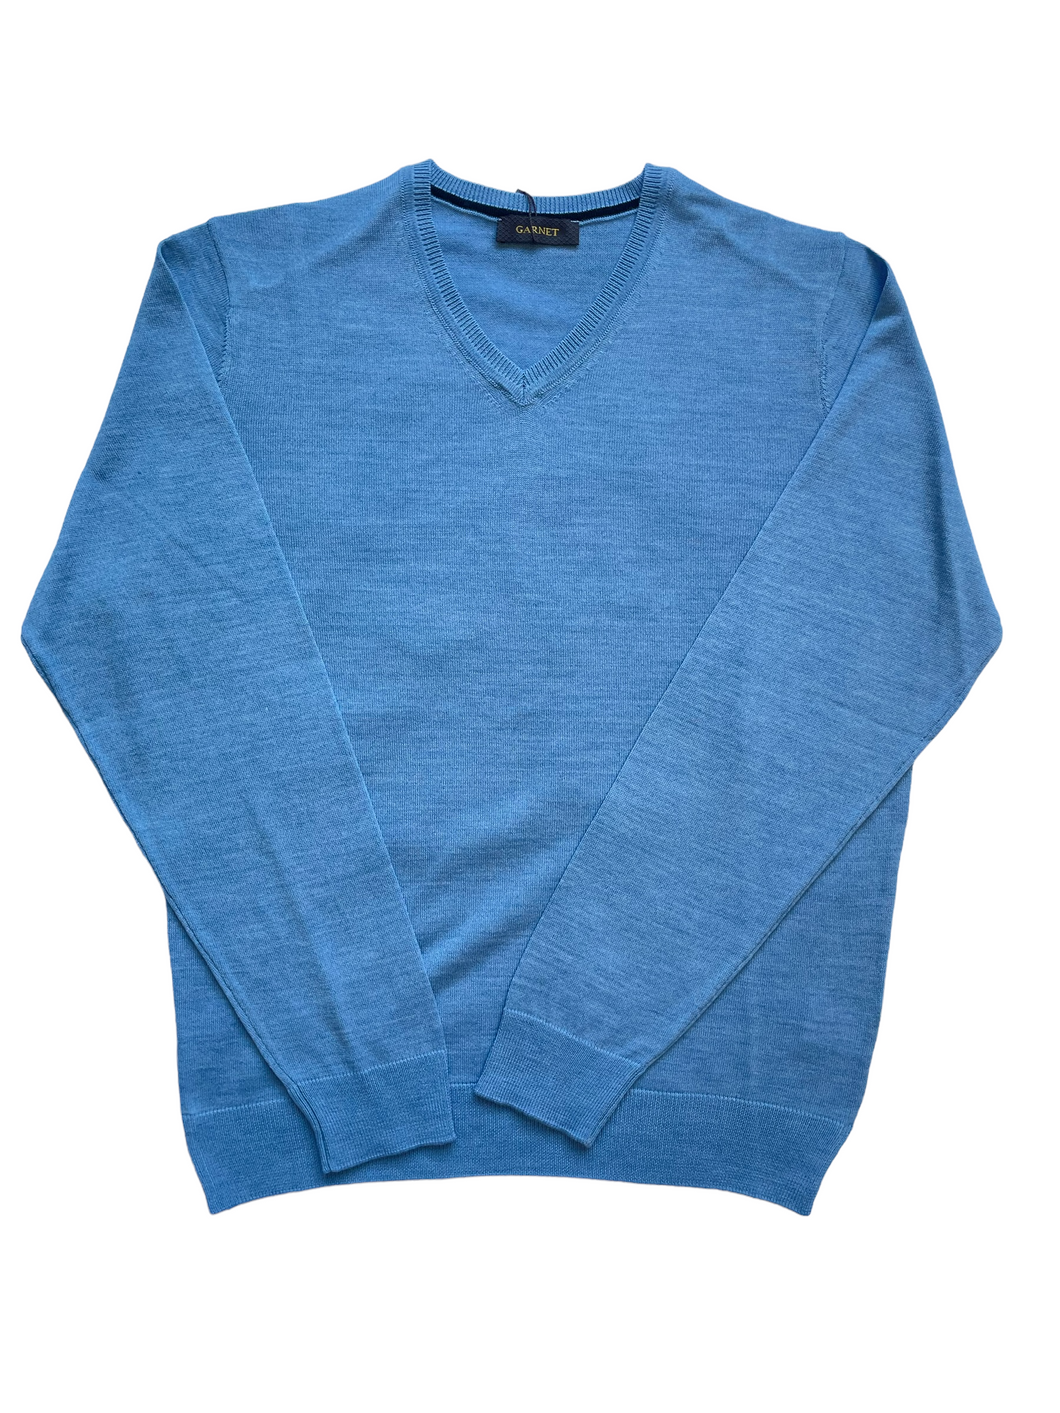 Light Blue Men's Sweater - Indie Indie Bang! Bang!